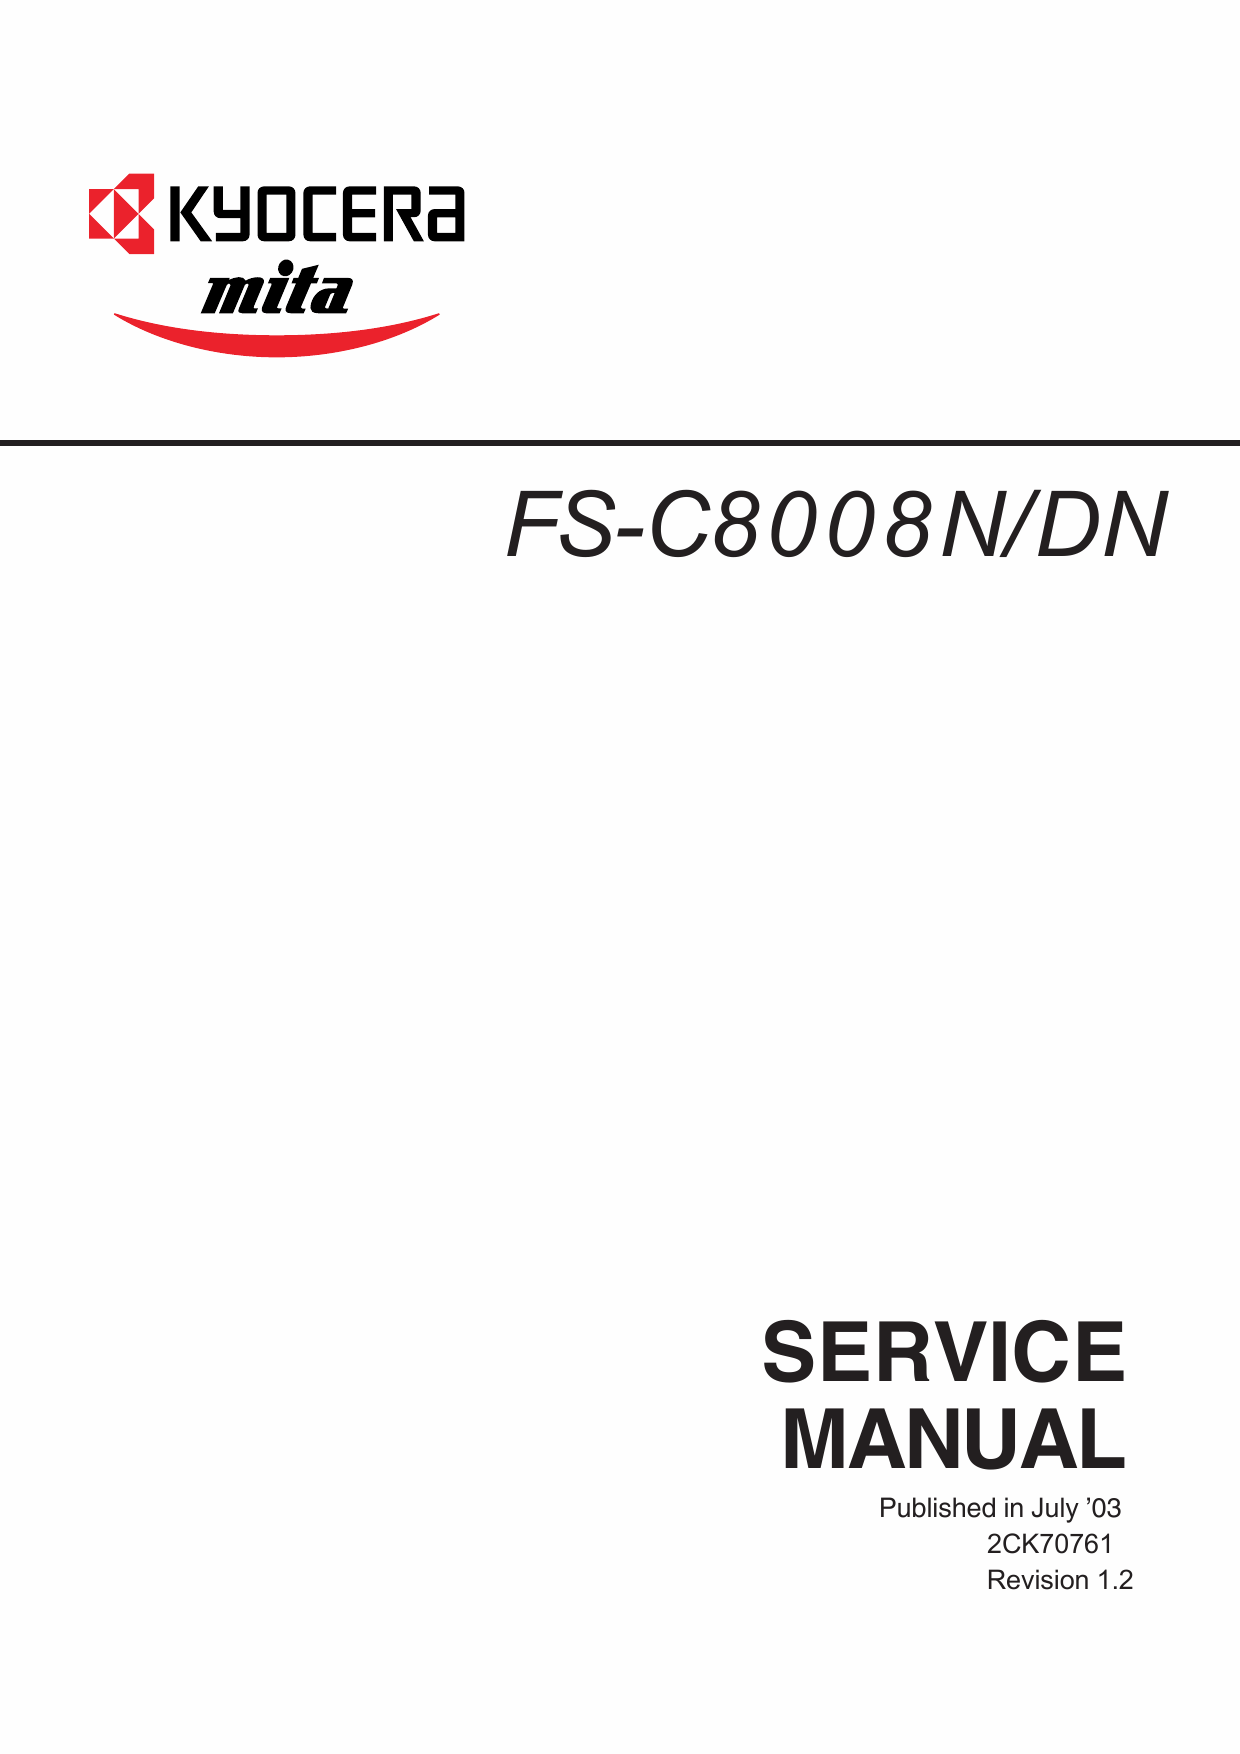 KYOCERA ColorLaserPrinter FS-C8008N DN Parts and Service Manual-1